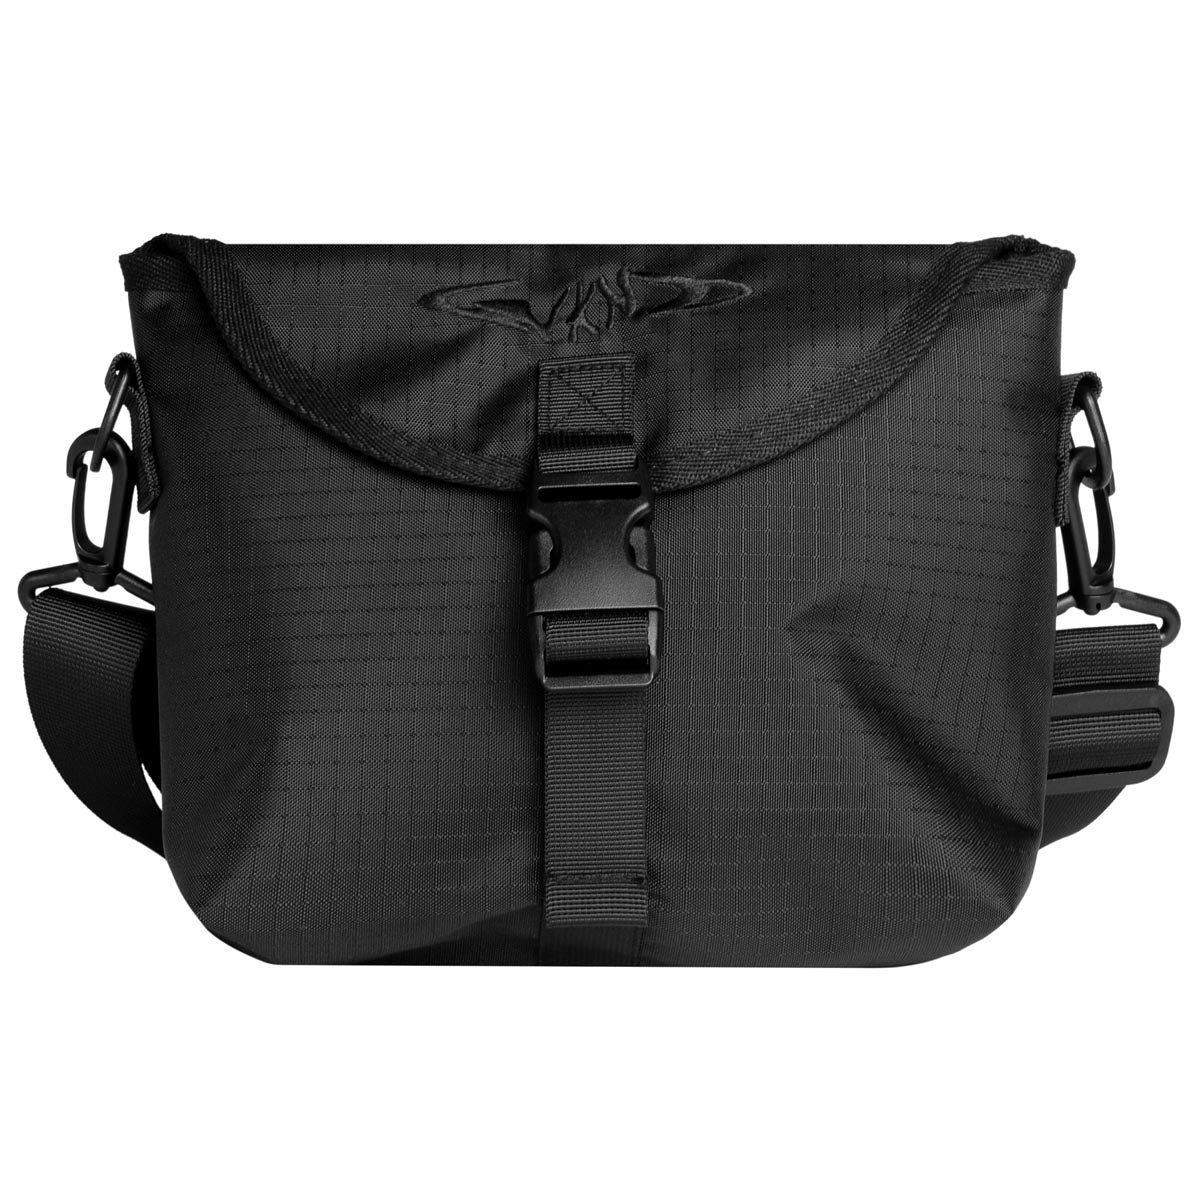 WKND Terry Shoulder Bag - Black image 1